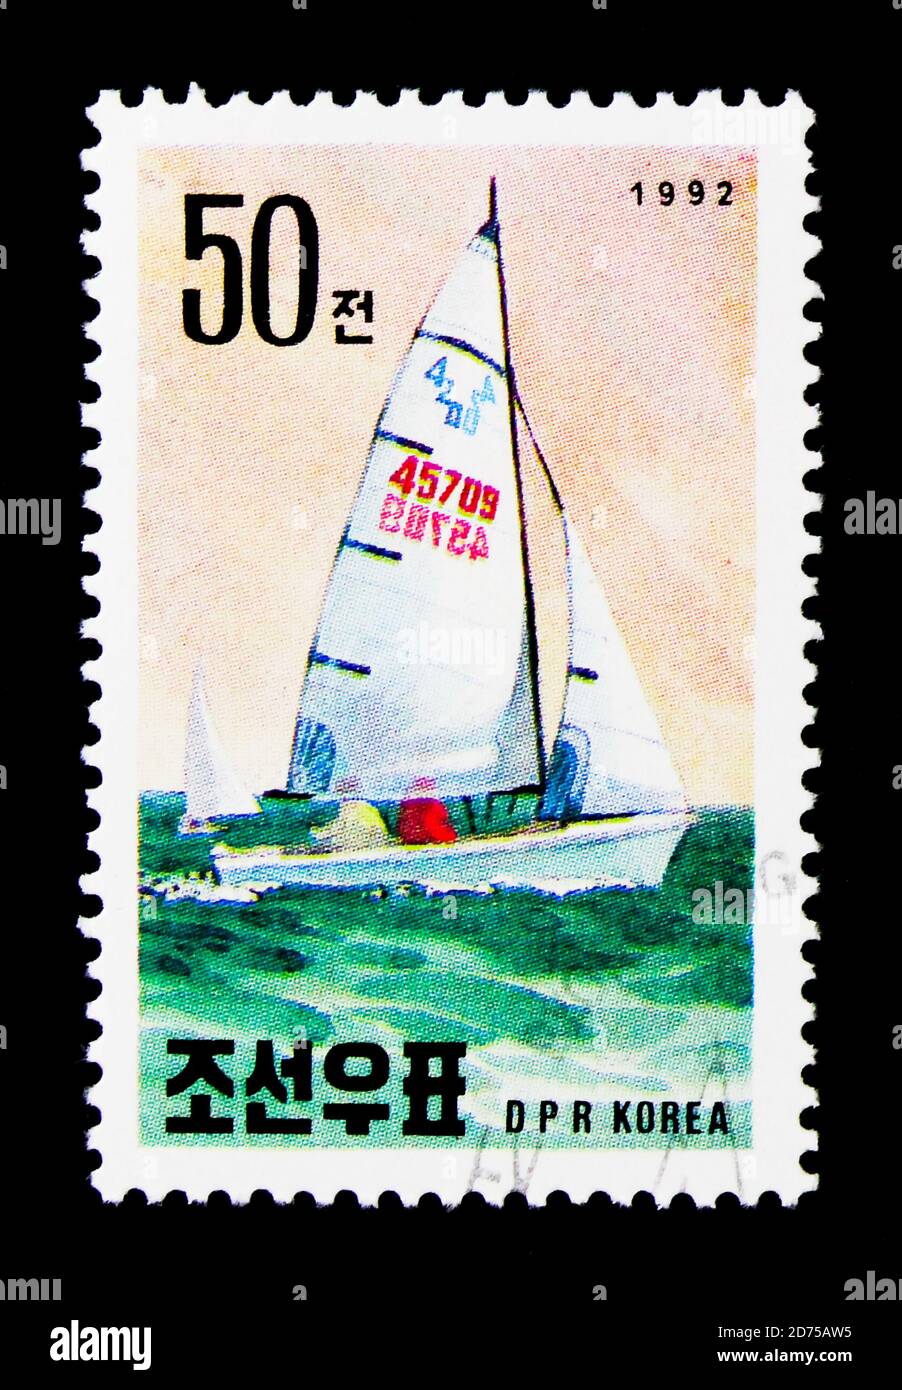 MOSCOU, RUSSIE - 25 NOVEMBRE 2017 : un timbre imprimé en république populaire démocratique de Corée montre la course de bateaux de Riccione, exposition internationale de timbres Banque D'Images